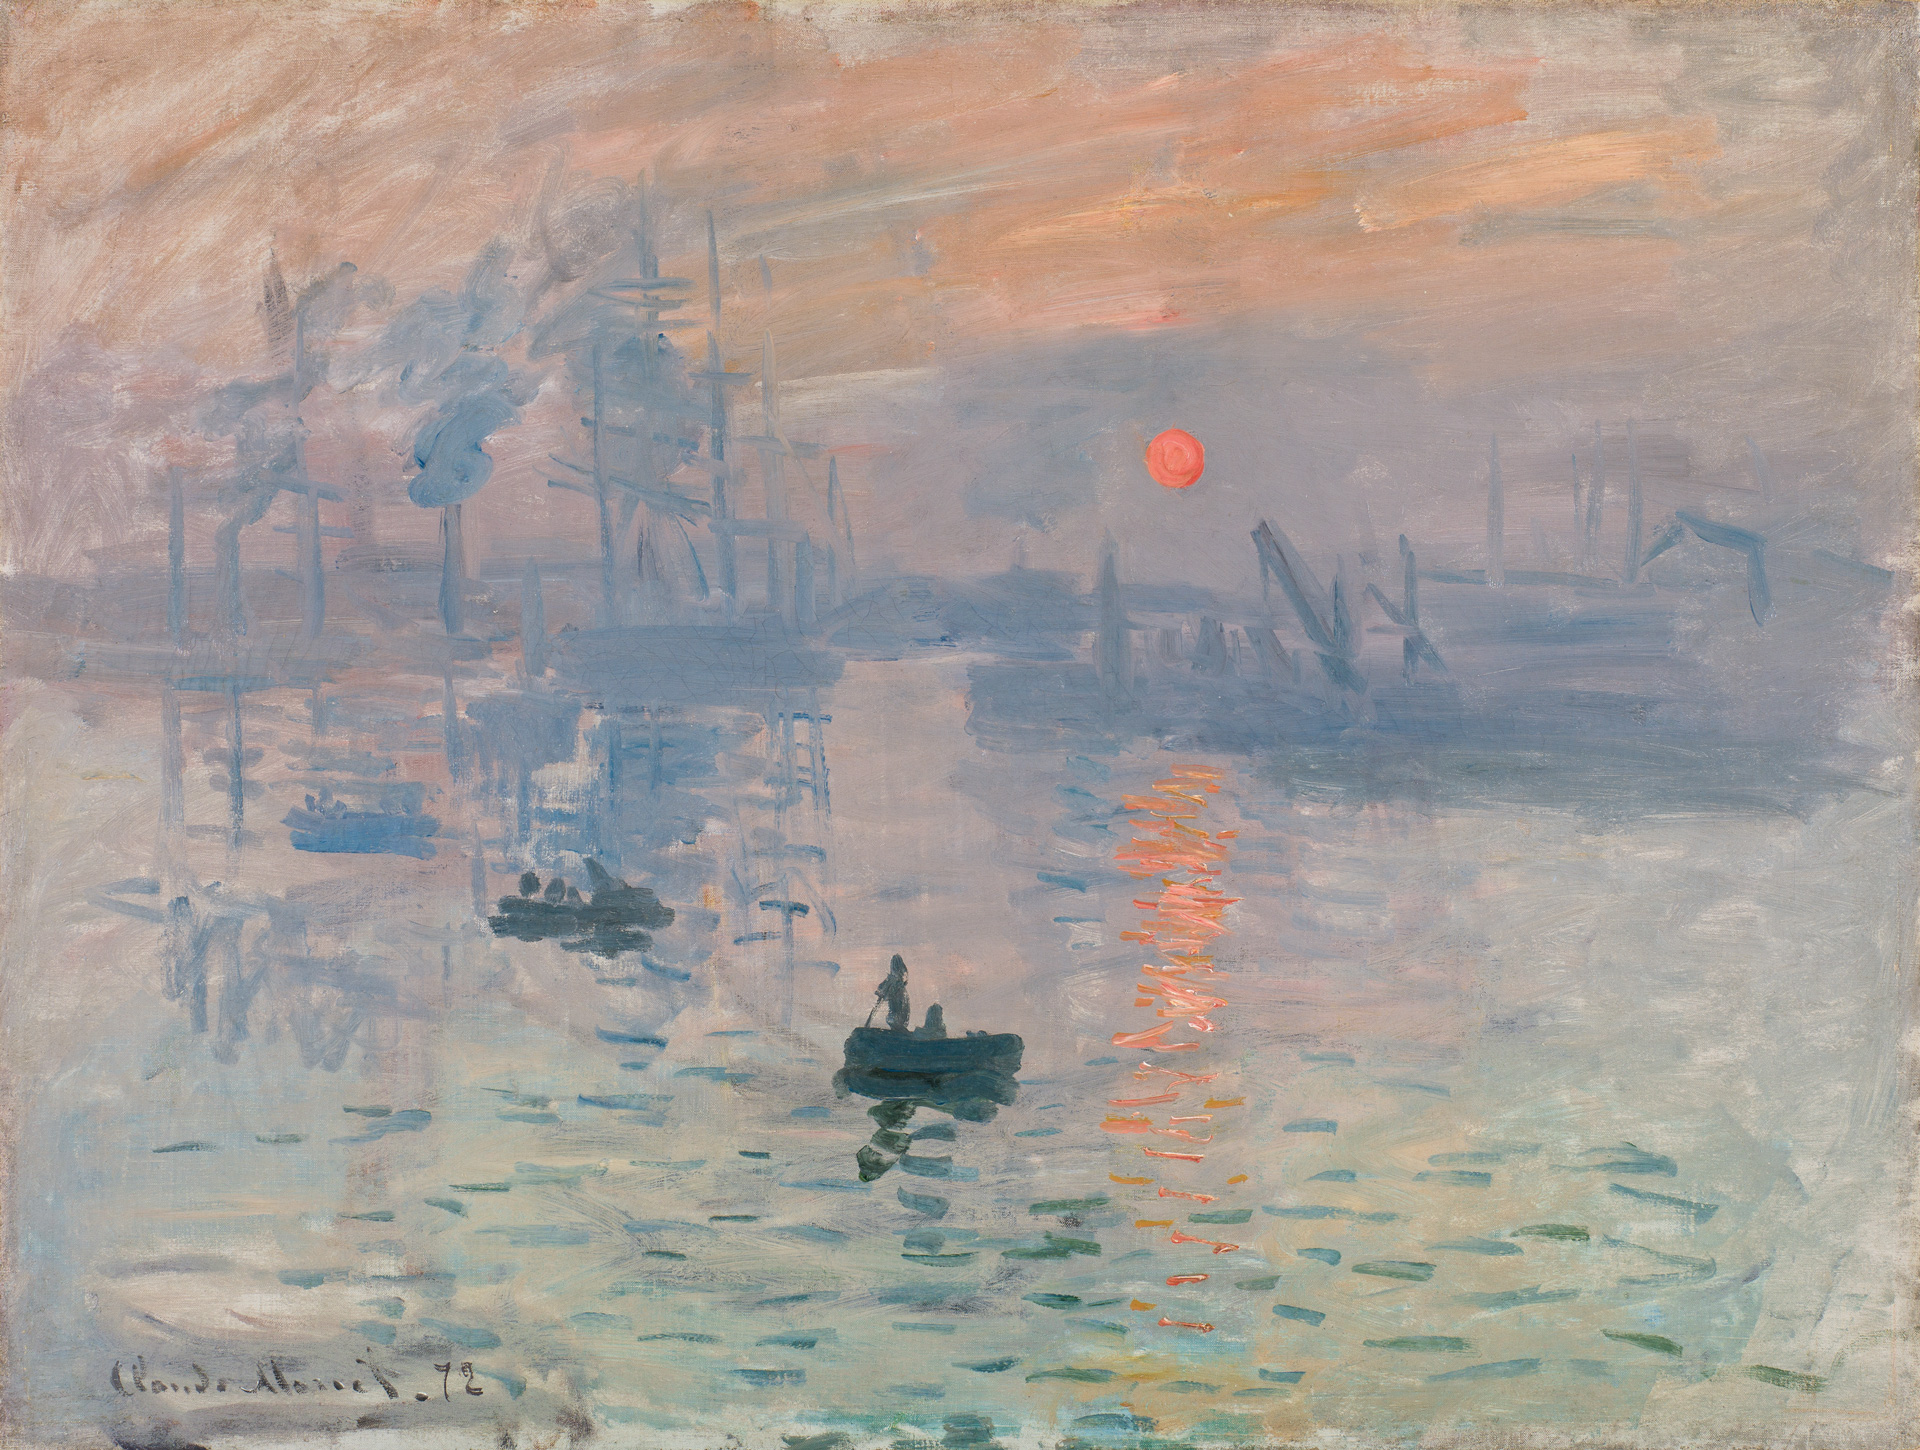 Première exposition impressionniste, la toile de Claude Monet, "Impression, soleil levant", Le Havre, qui donnera son nom au mouvement Impressionniste